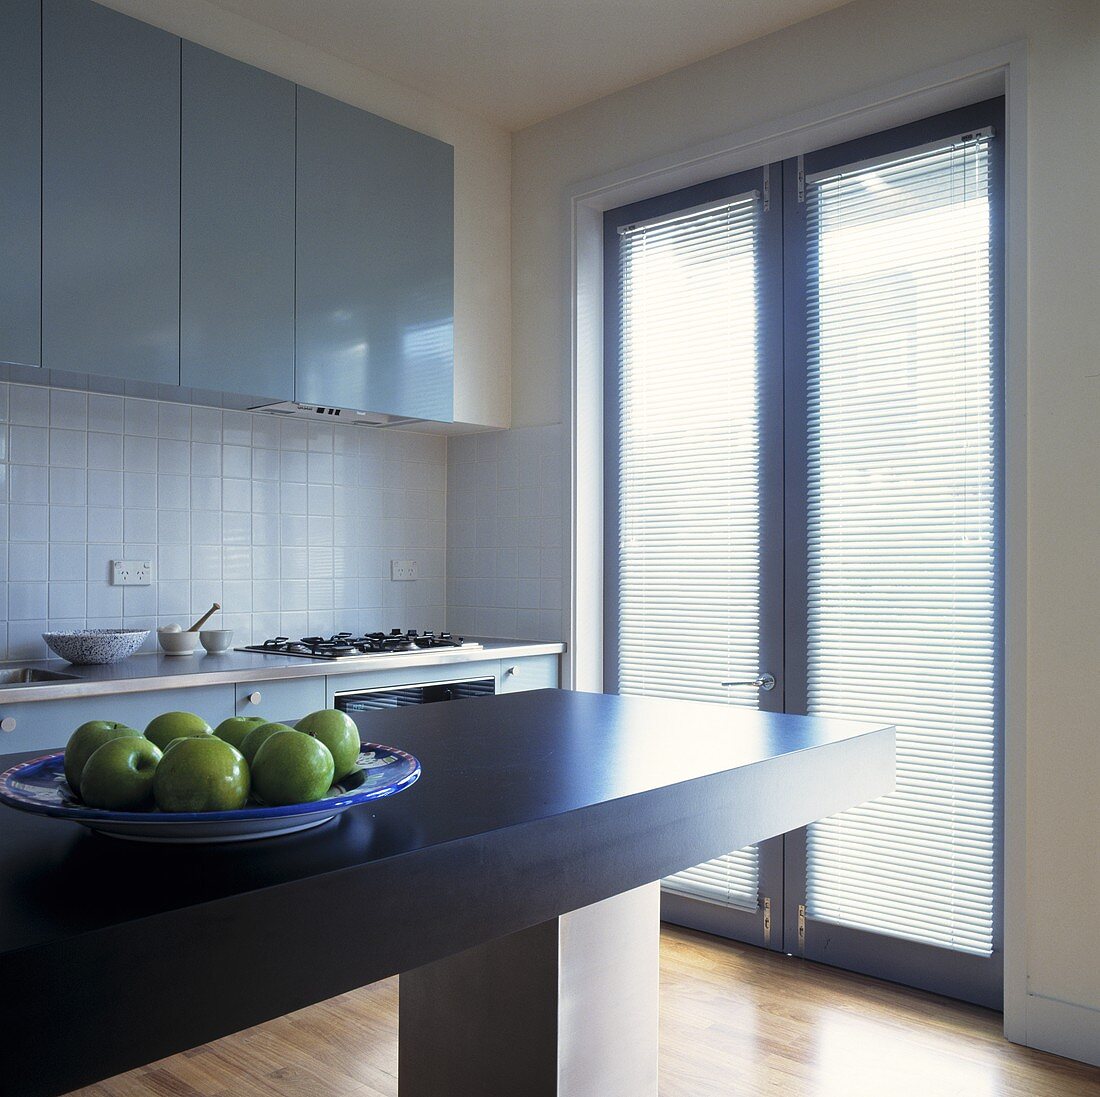 Ein Teller mit Äpfeln steht auf einer grauen freistehenden Arbeitsplatte in einer hellgrauen Küche mit einem Flügelfenster, das zu einer Terrasse führen und an dem Jalousien angebracht sind